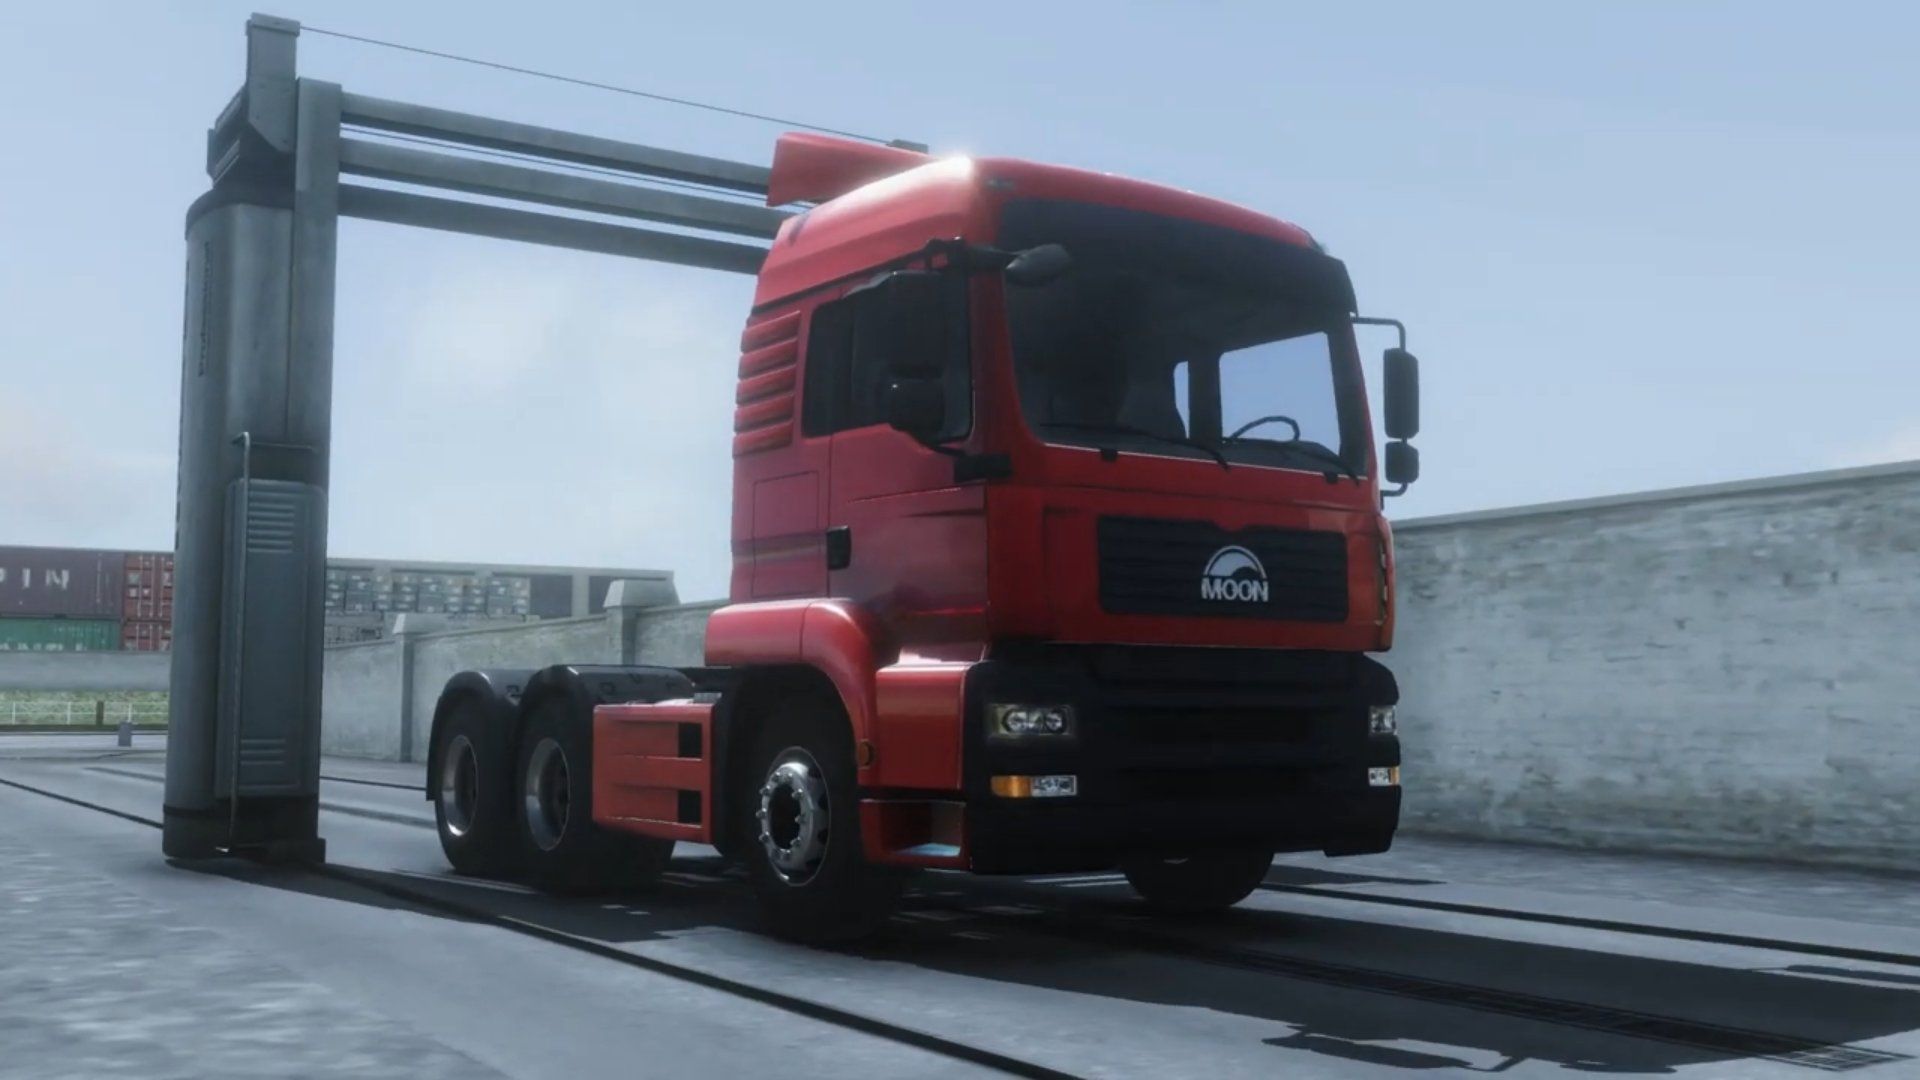 SAIU! DOWNLOAD da BETA - Truck Simulator Europe 3 - Novo Jogo de Caminhões  Ultra Realistas (Android) 